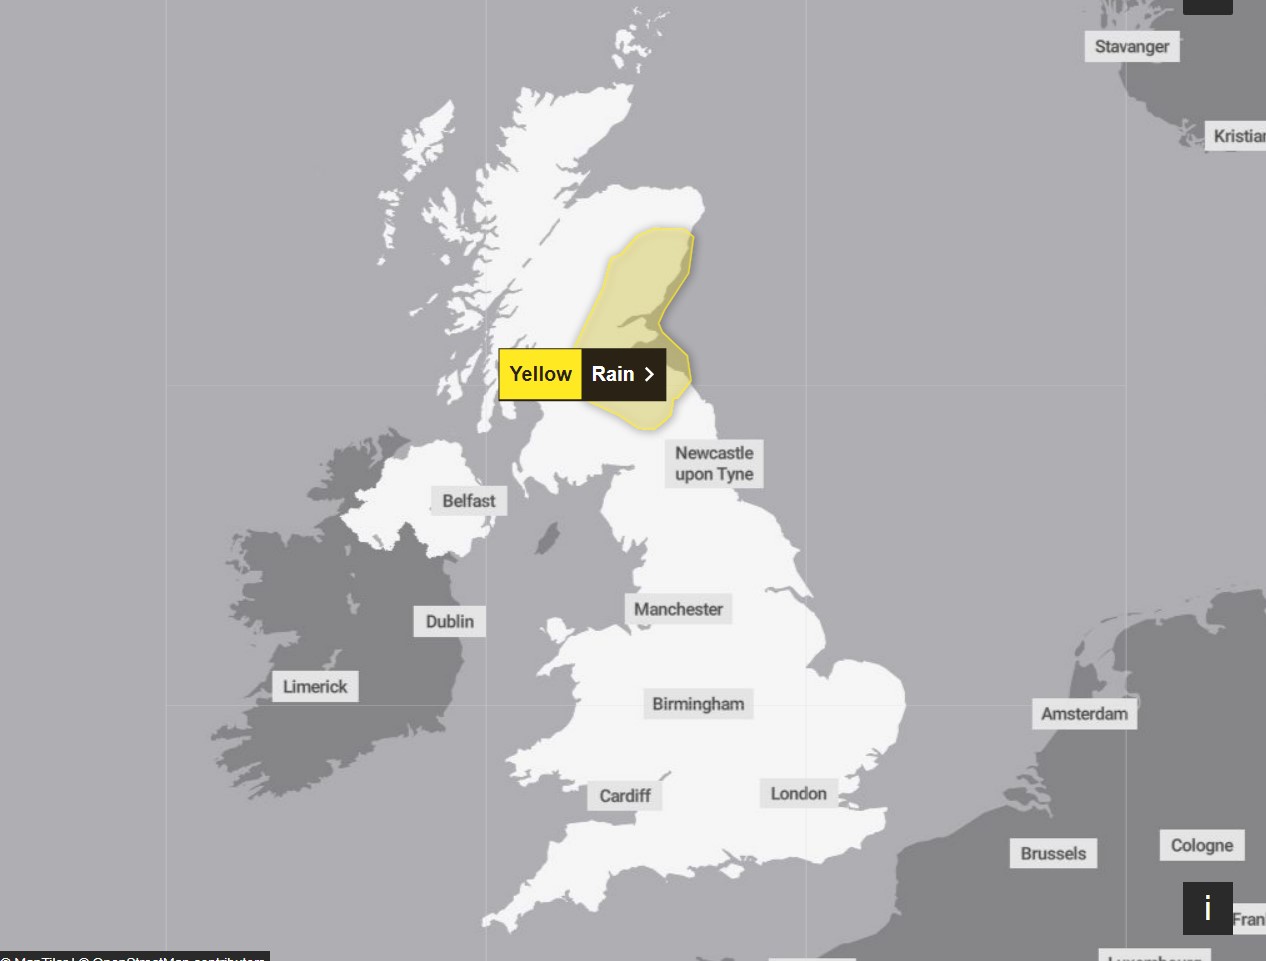 Zwei Tage lang wurden gelbe Warnungen und Überschwemmungswarnungen ausgegeben, nachdem der Sturm Fergus Großbritannien mit Windgeschwindigkeiten von 130 km/h getroffen hat